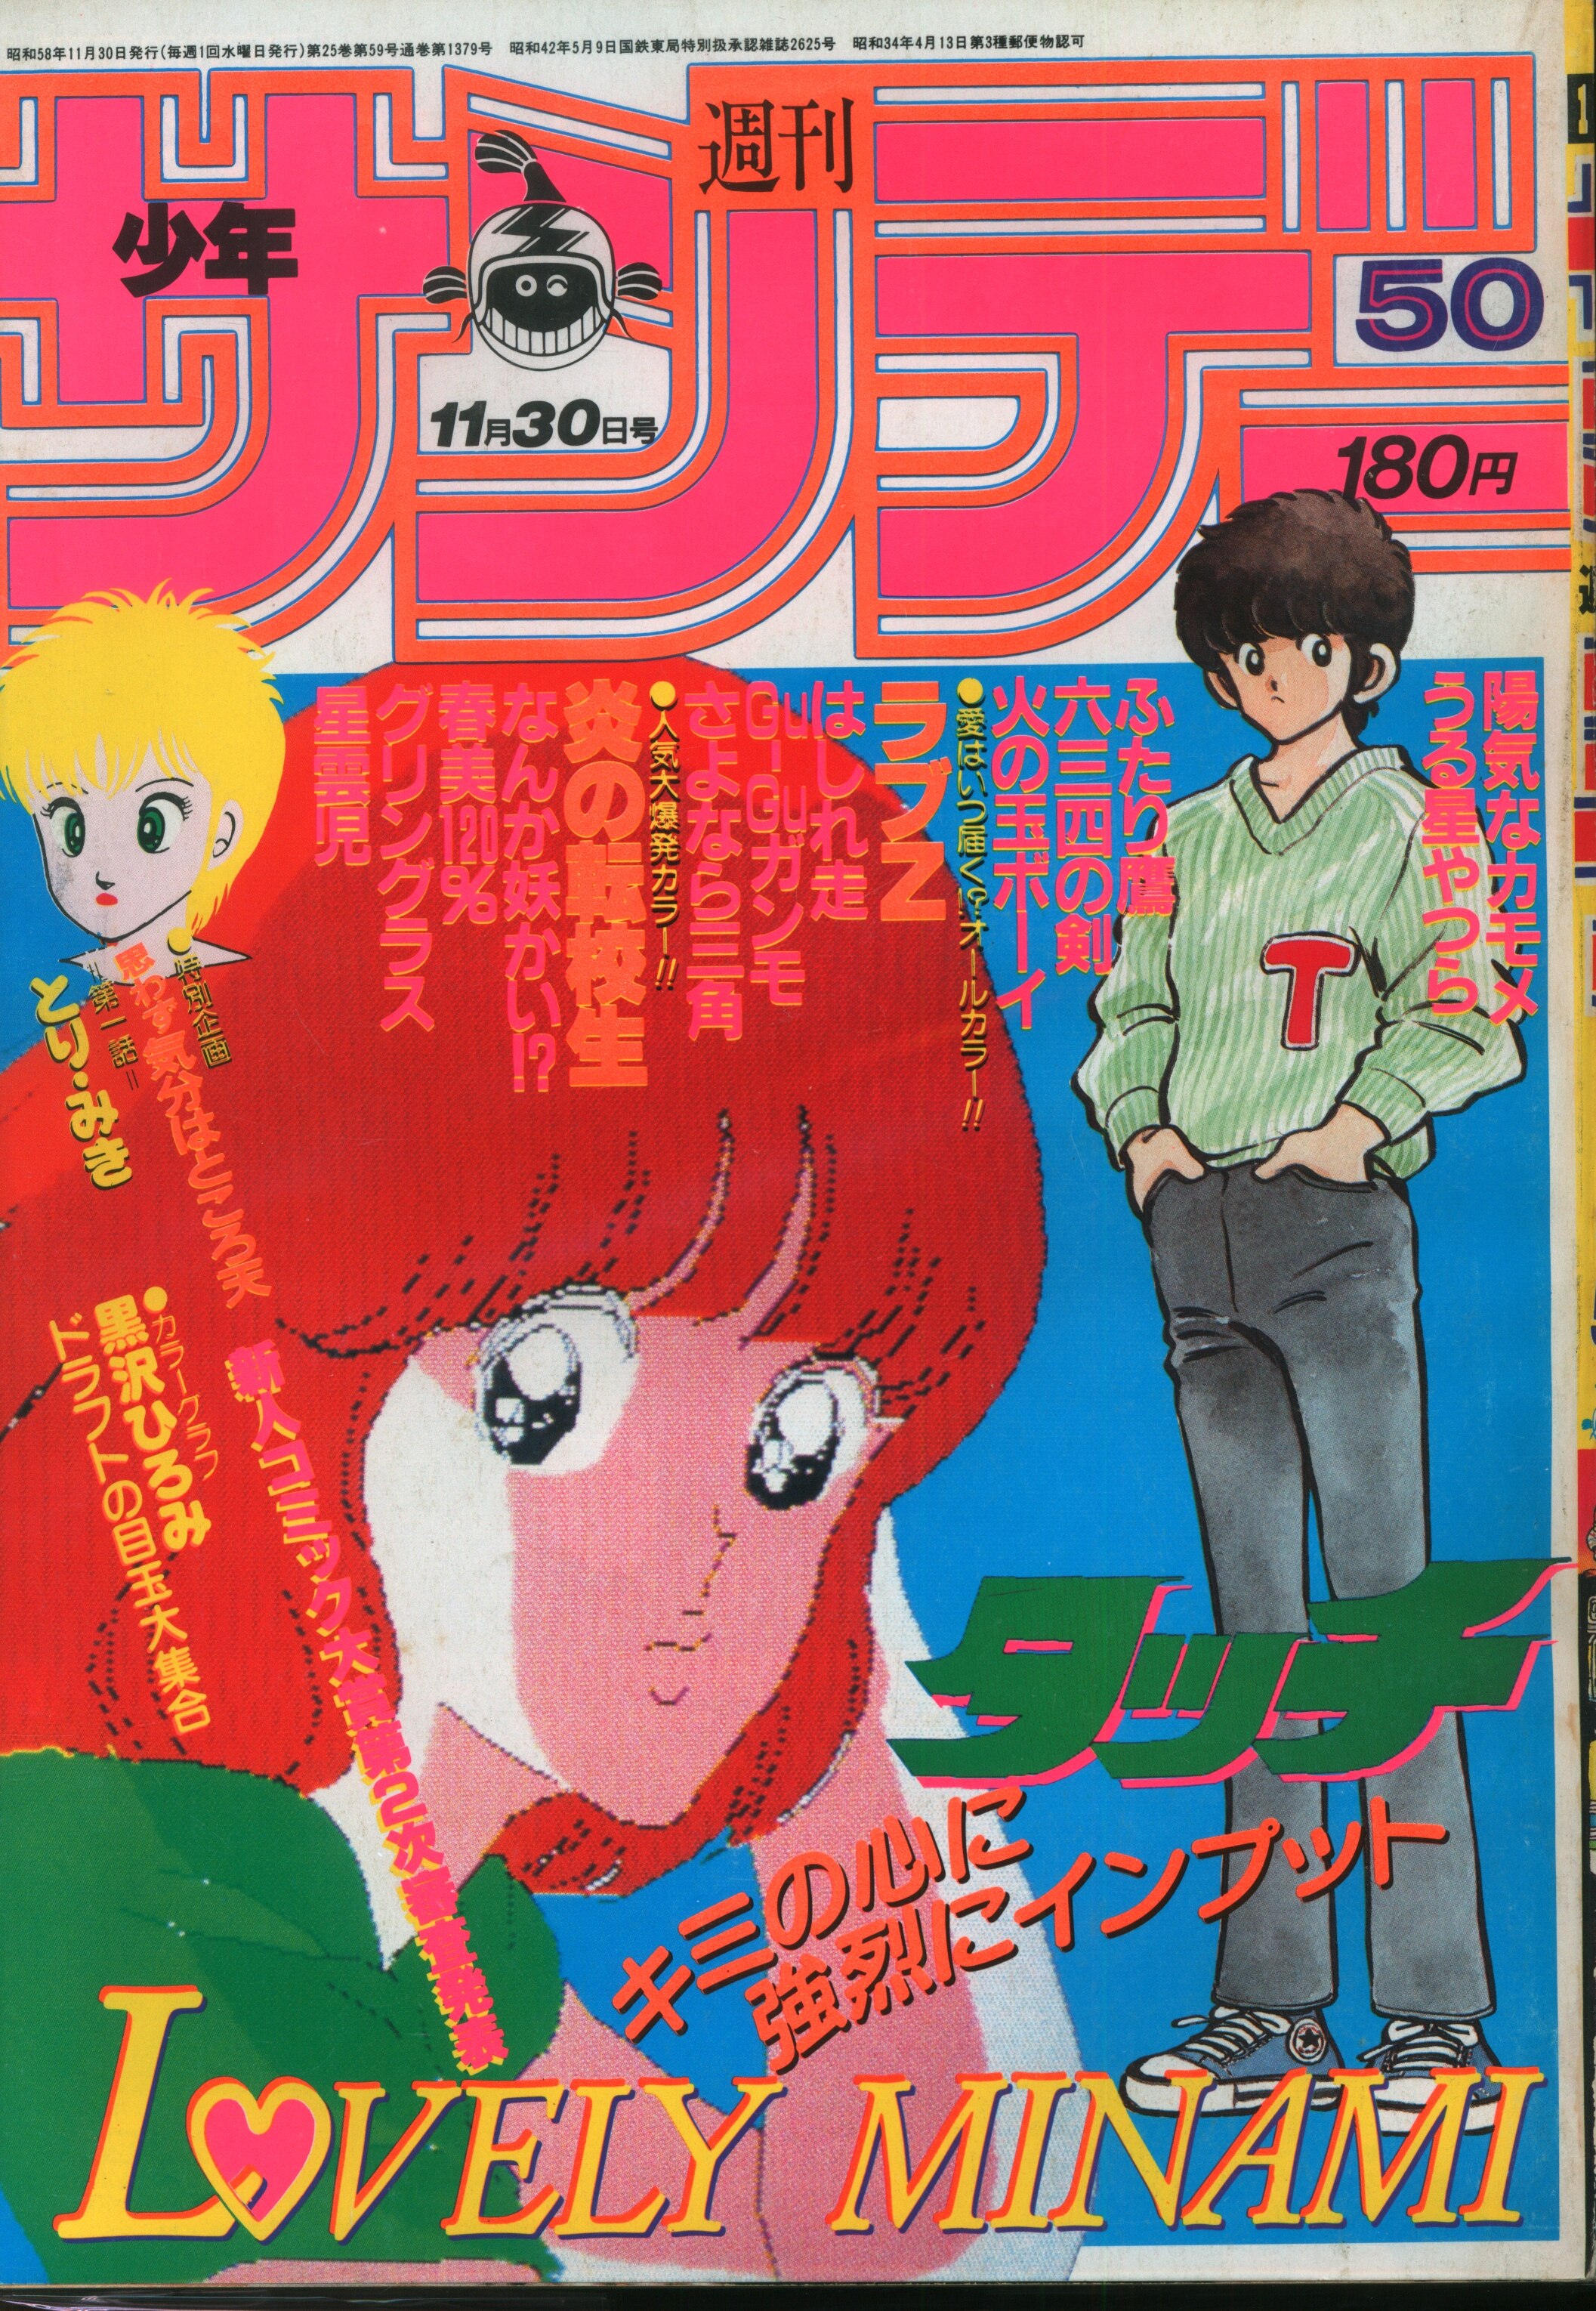 小学館 1983年(昭和58年)の漫画雑誌 週刊少年サンデー - 少年漫画